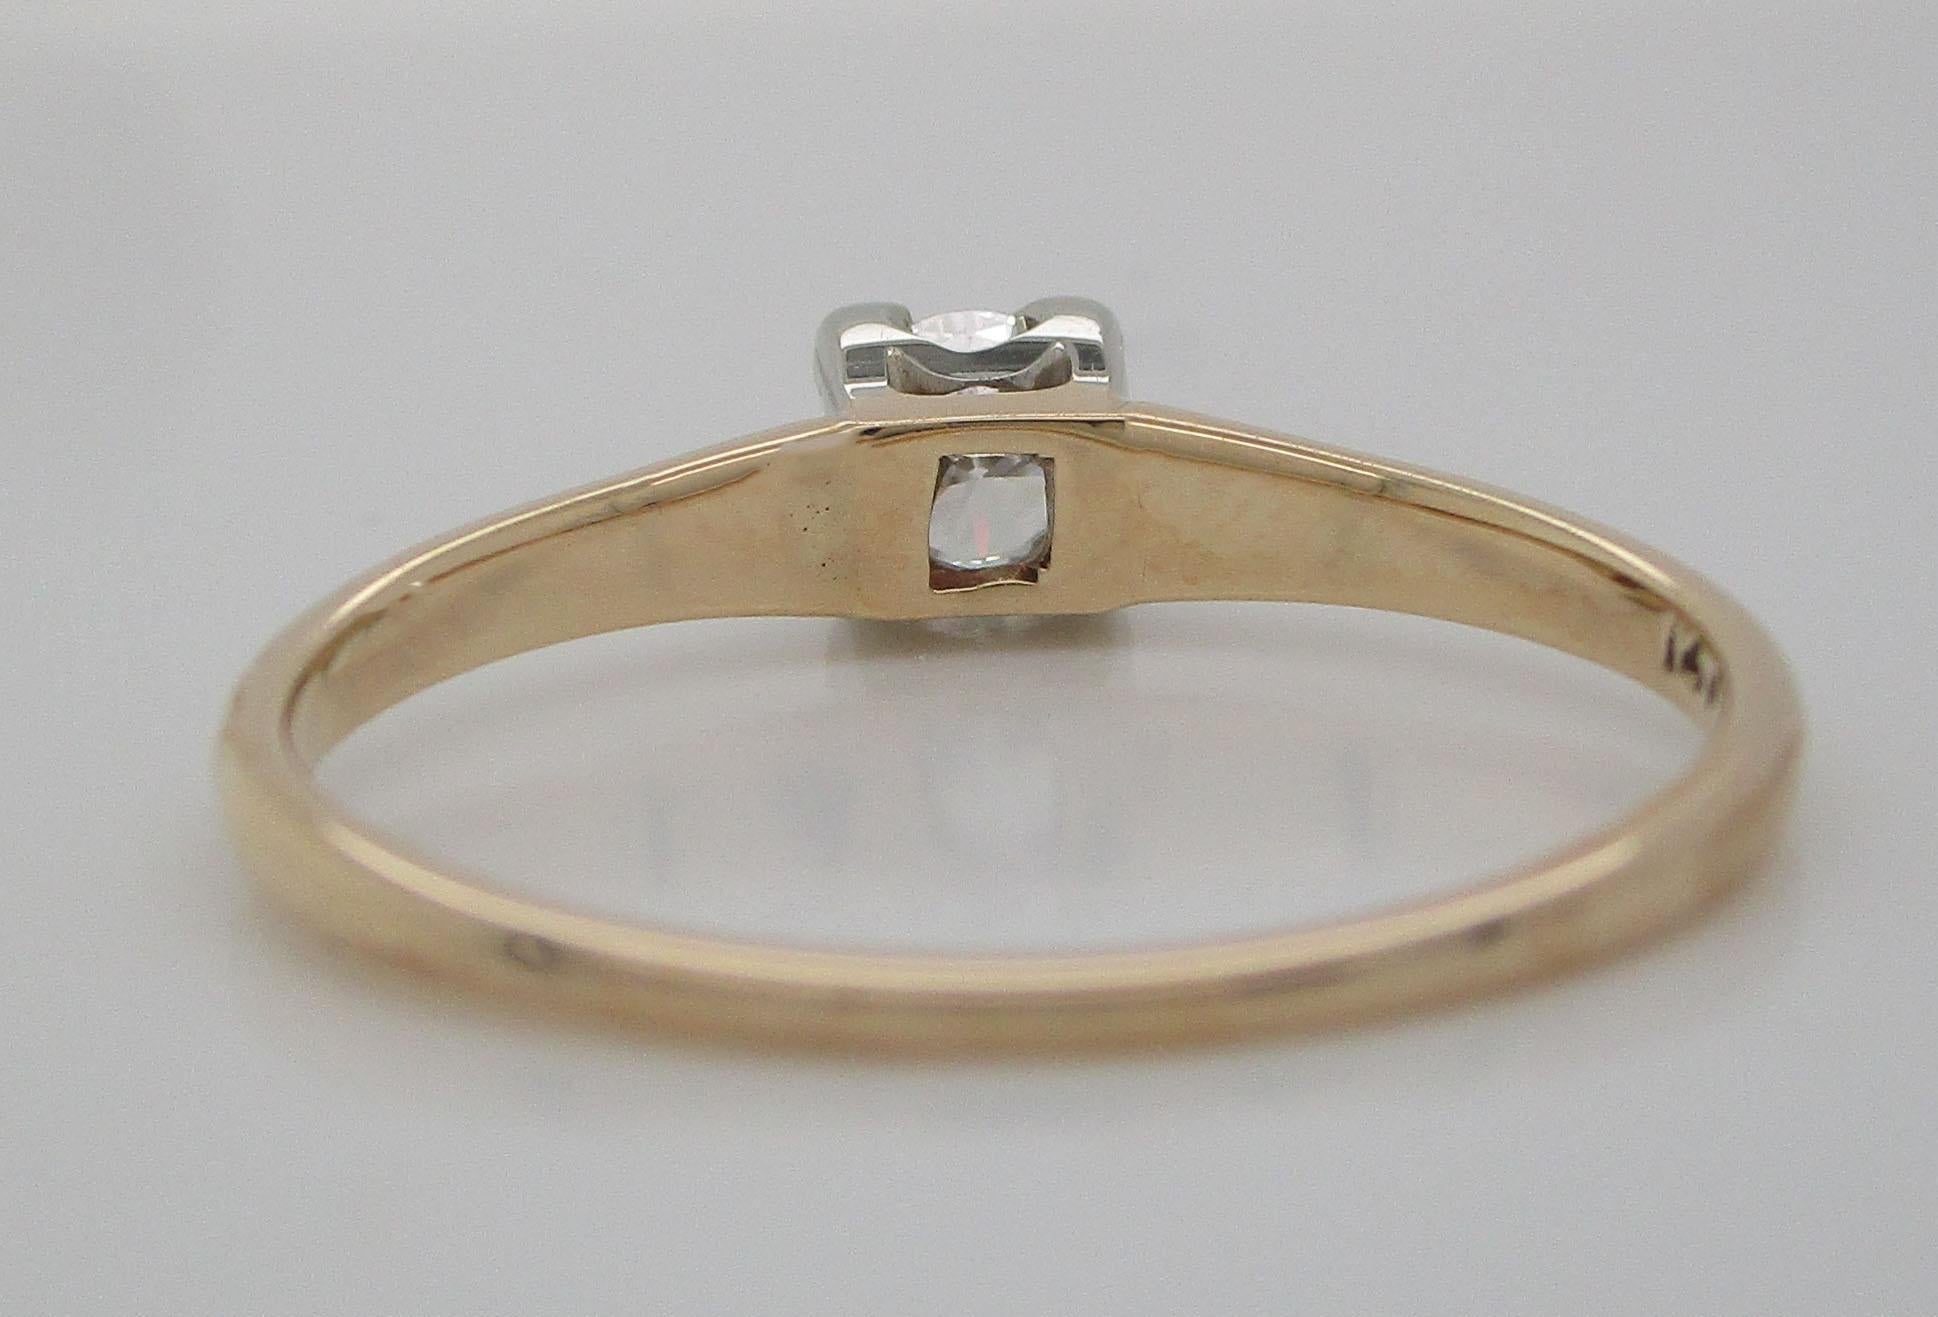 Vintage 14 Karat White and Yellow Gold Diamond Engagement Ring 3